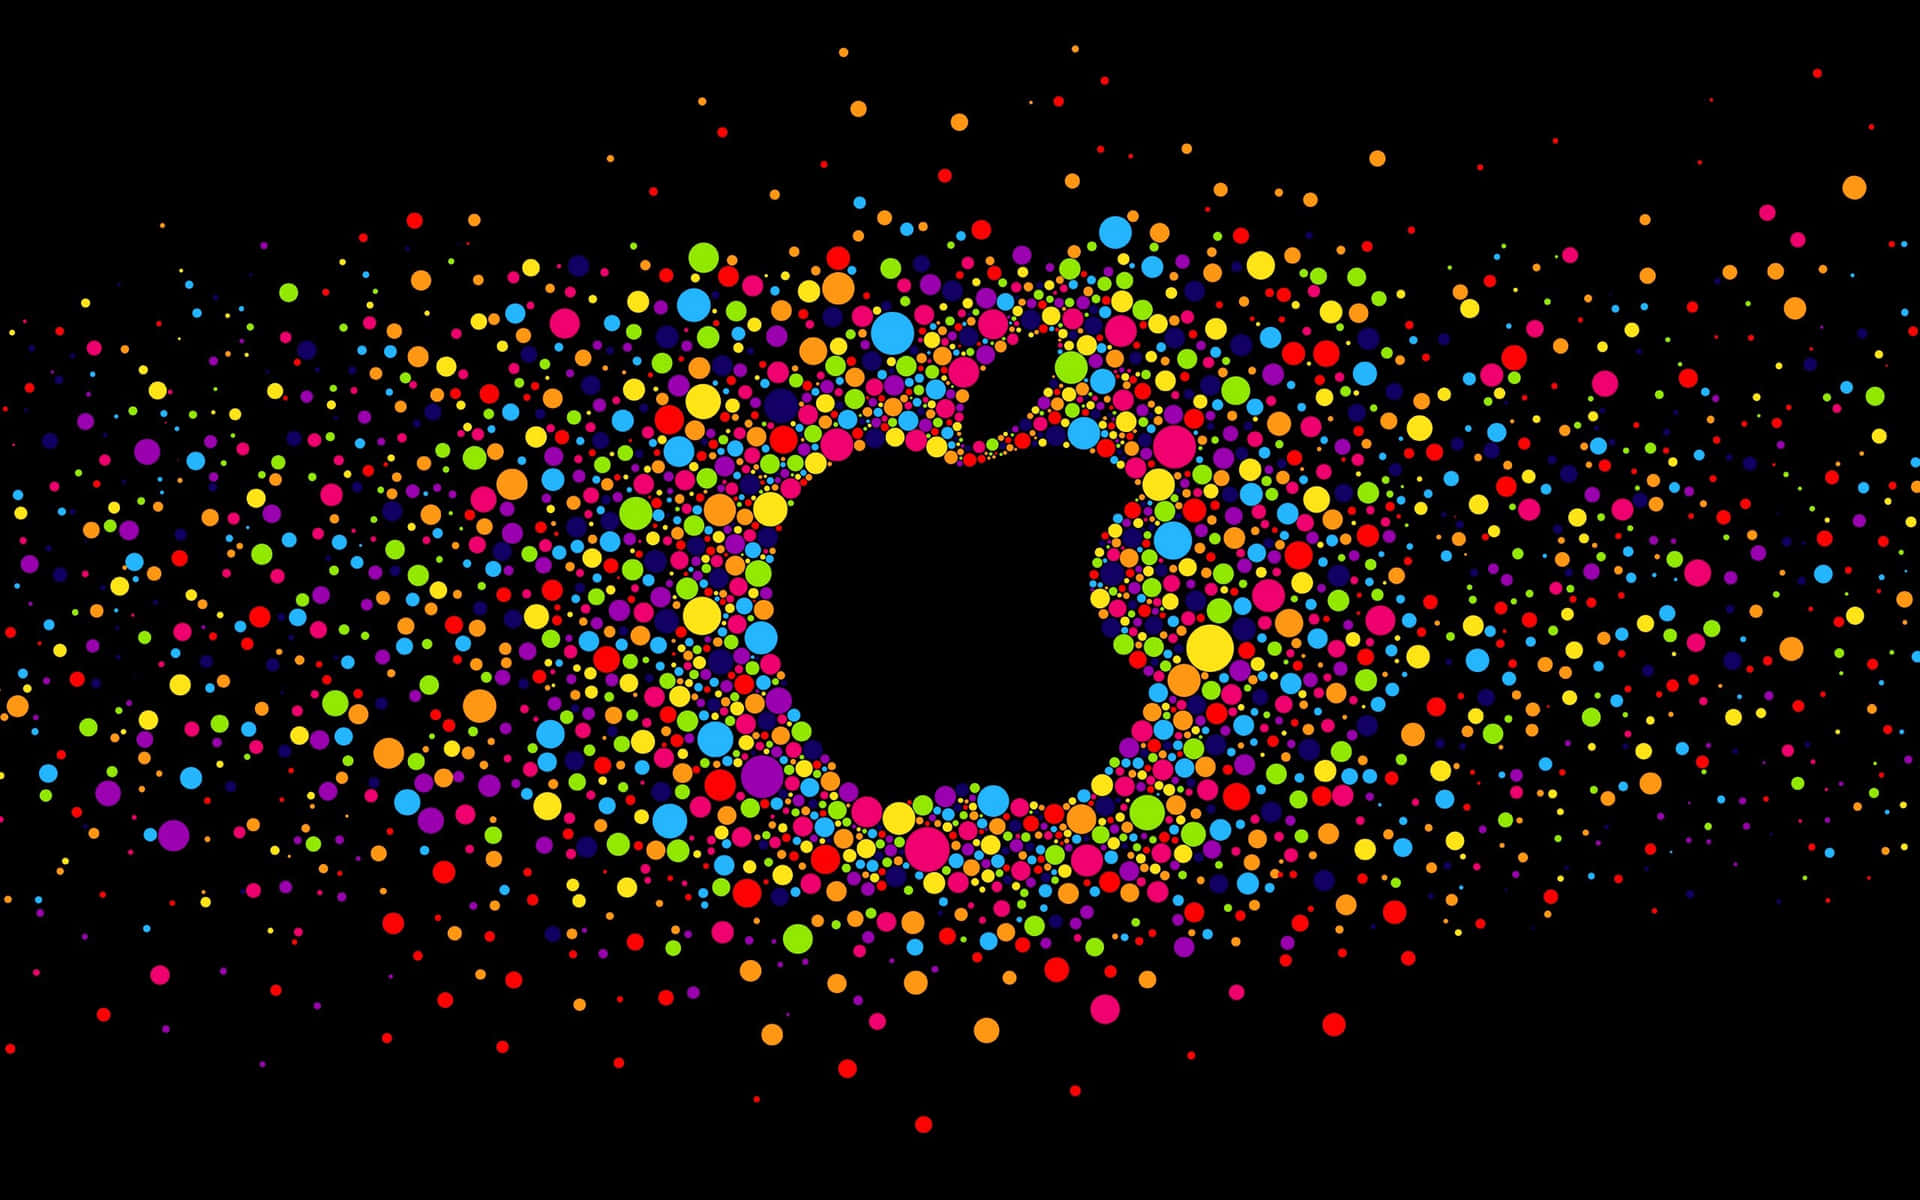 Logotipoda Apple Em Background De 2560 X 1600